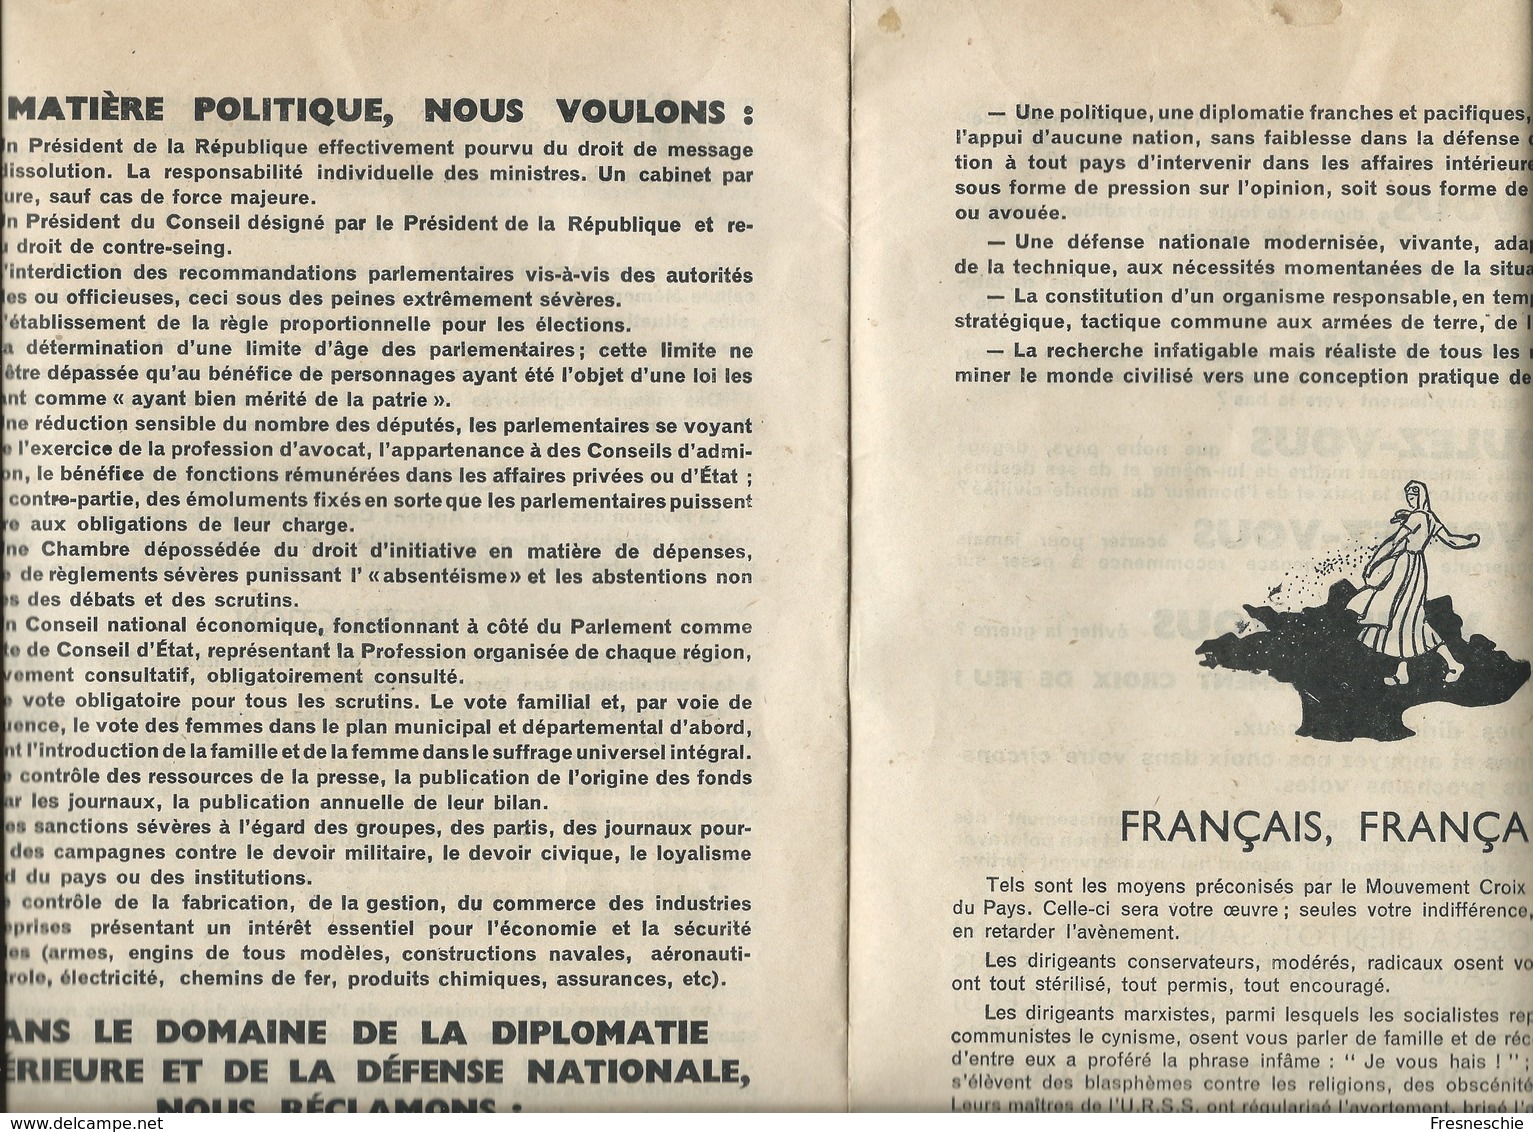 Politique Elections 1936 Manifeste Croix De Feu. Pour Le Peuple Par Le Peuple TB 27 X 20 Cm 16 Pages - Documents Historiques